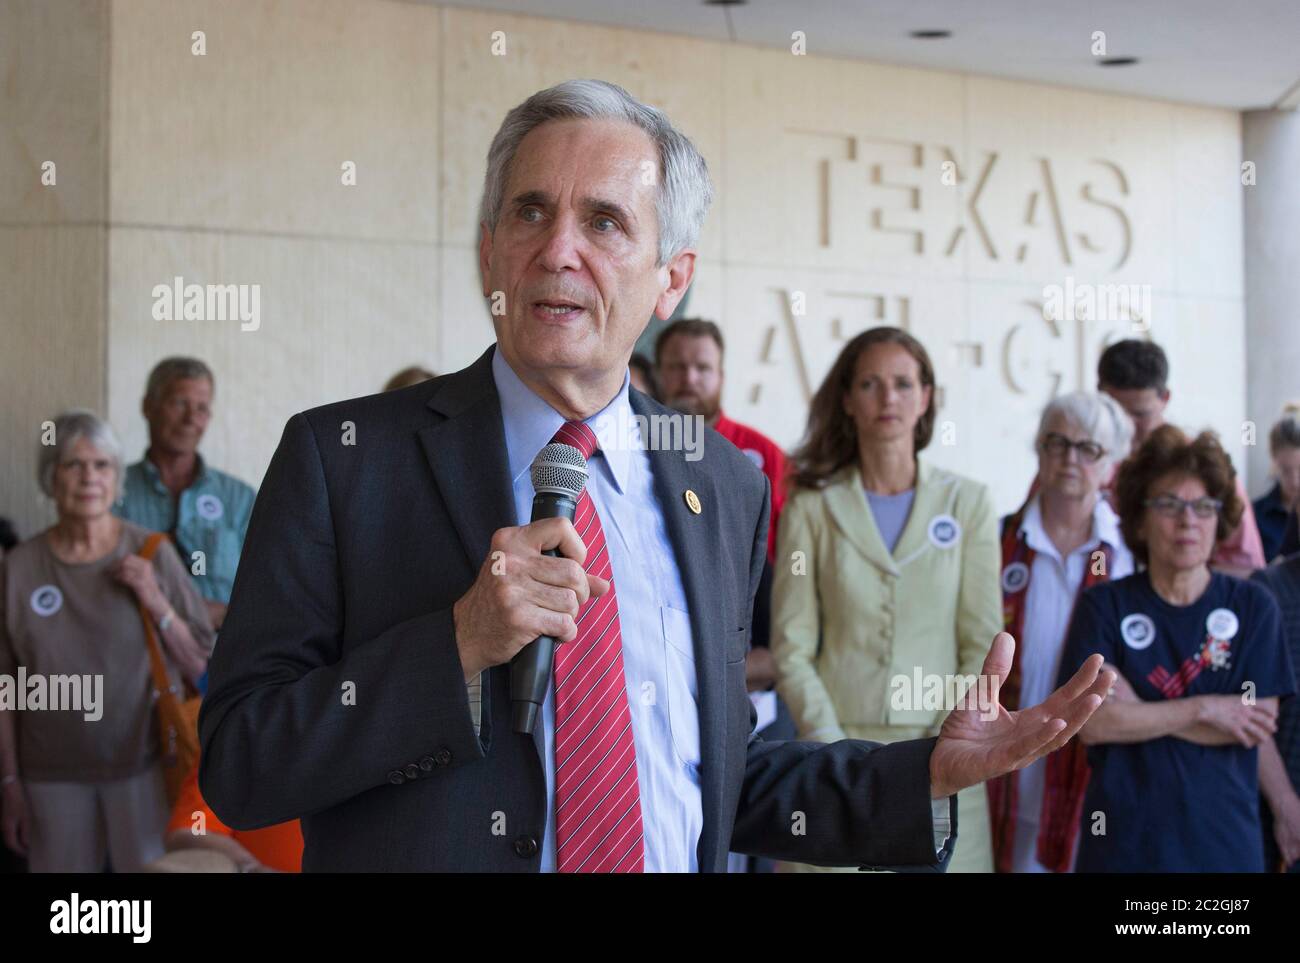 Austin Texas Etats-Unis, 29 juin 2016: Le congressiste texan Lloyd Doggett s'exprime lors d'un petit rassemblement contre la violence par armes à feu devant le siège social de l'AFL-CIO, où des victimes de violence par armes à feu ont été victimes. ©Bob Daemmrich Banque D'Images